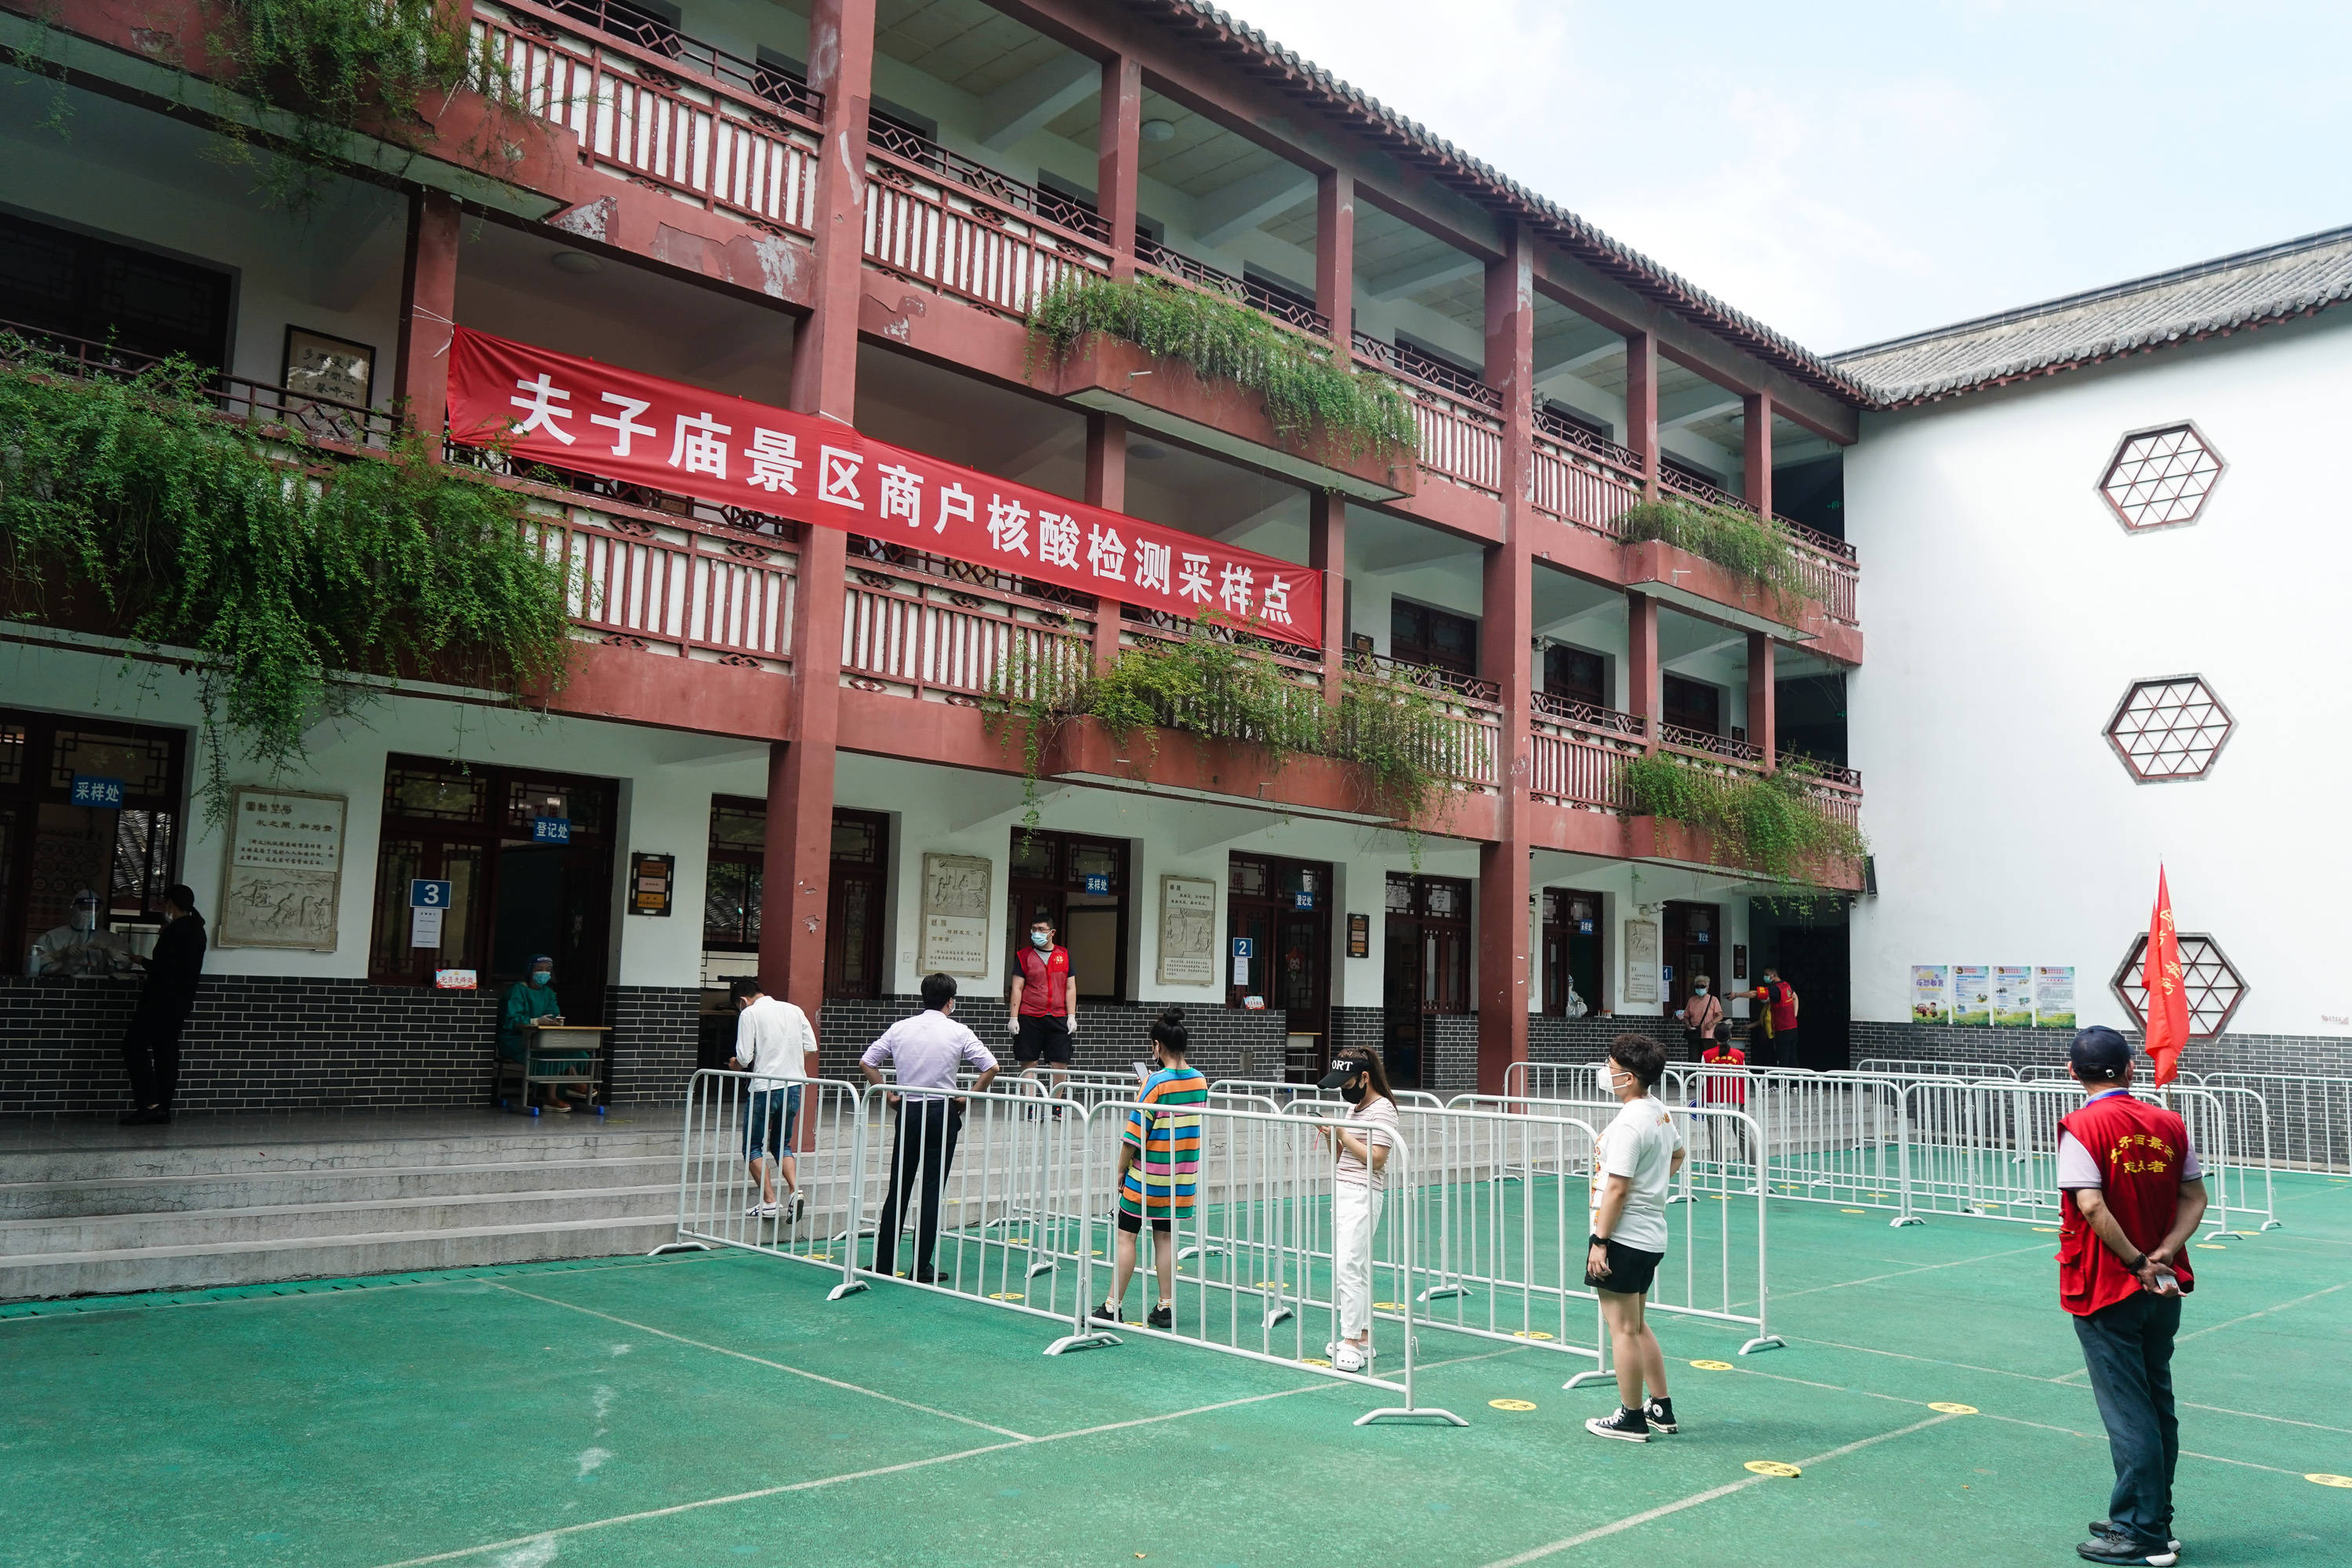 8月5日,人们在南京市夫子庙小学核酸检测点排队接受核酸检测取样.